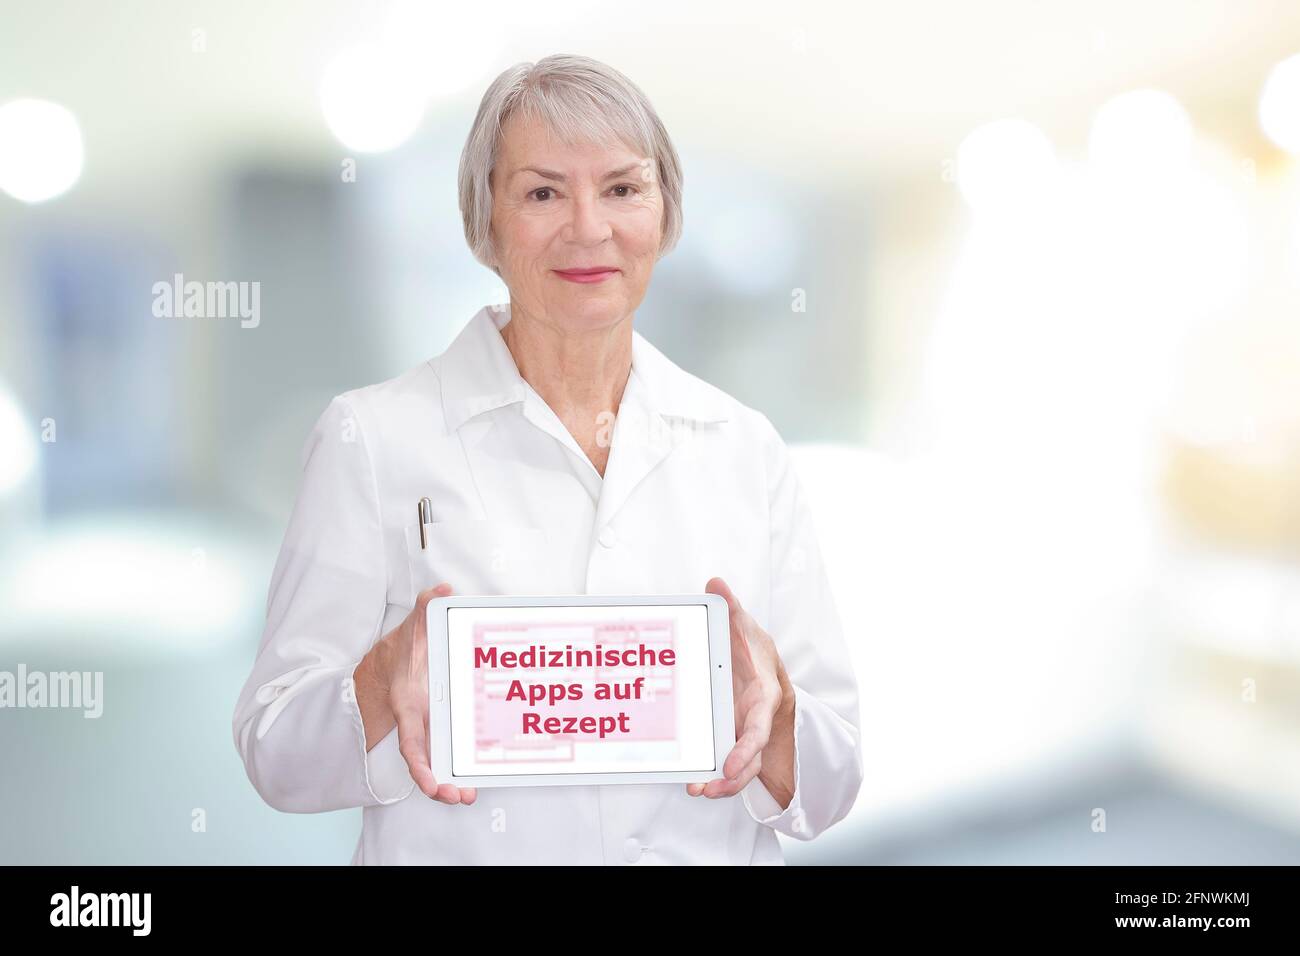 Medico senior che mostra un computer tablet con il testo tedesco: Medizinische Apps auf Rezept. Traduzione: Applicazioni medicinali su prescrizione. Foto Stock